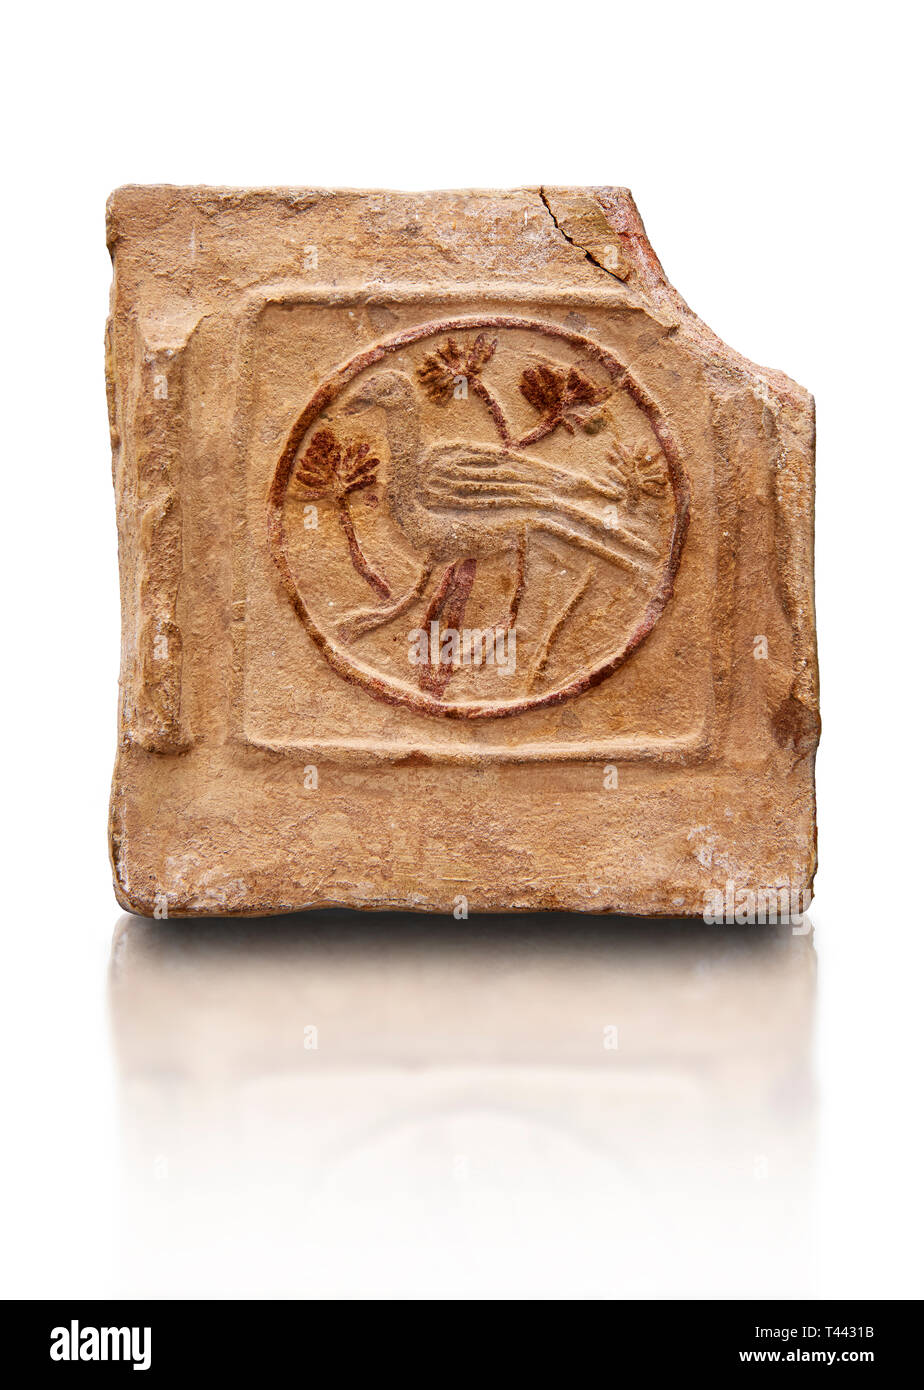 6th-7secolo cristiano bizantino piastrelle in terracotta raffigurante un uccello - prodotte in Byzacena - attuale Tunisia. Questi primi terracott cristiana Foto Stock